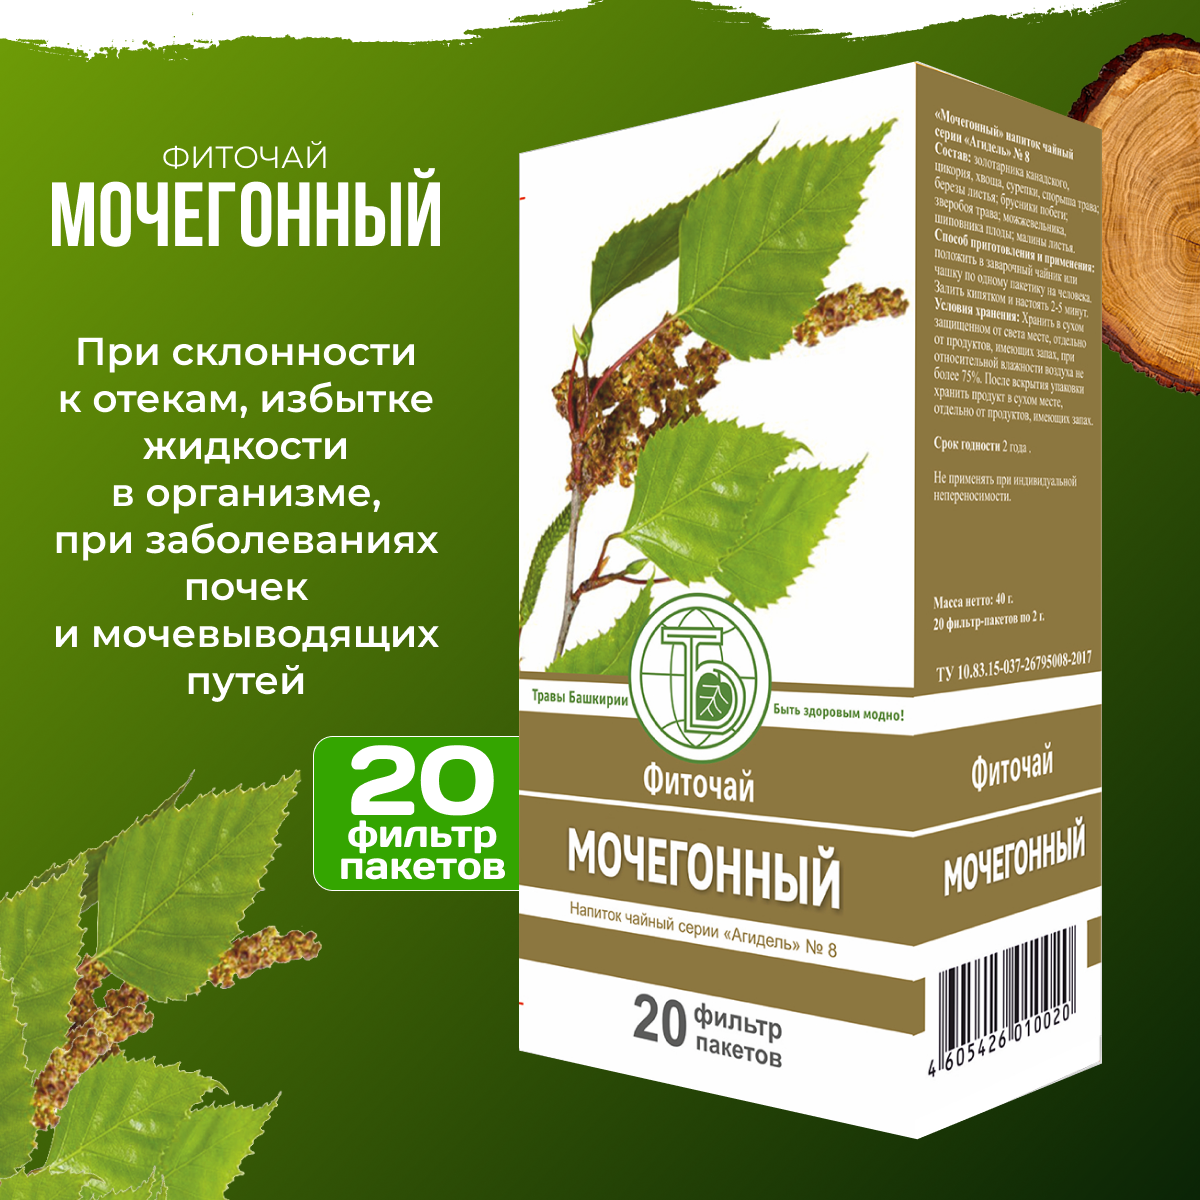 Фиточай Мочегонный Травы Башкирии 20 фильтр пакетов по 2 гр.